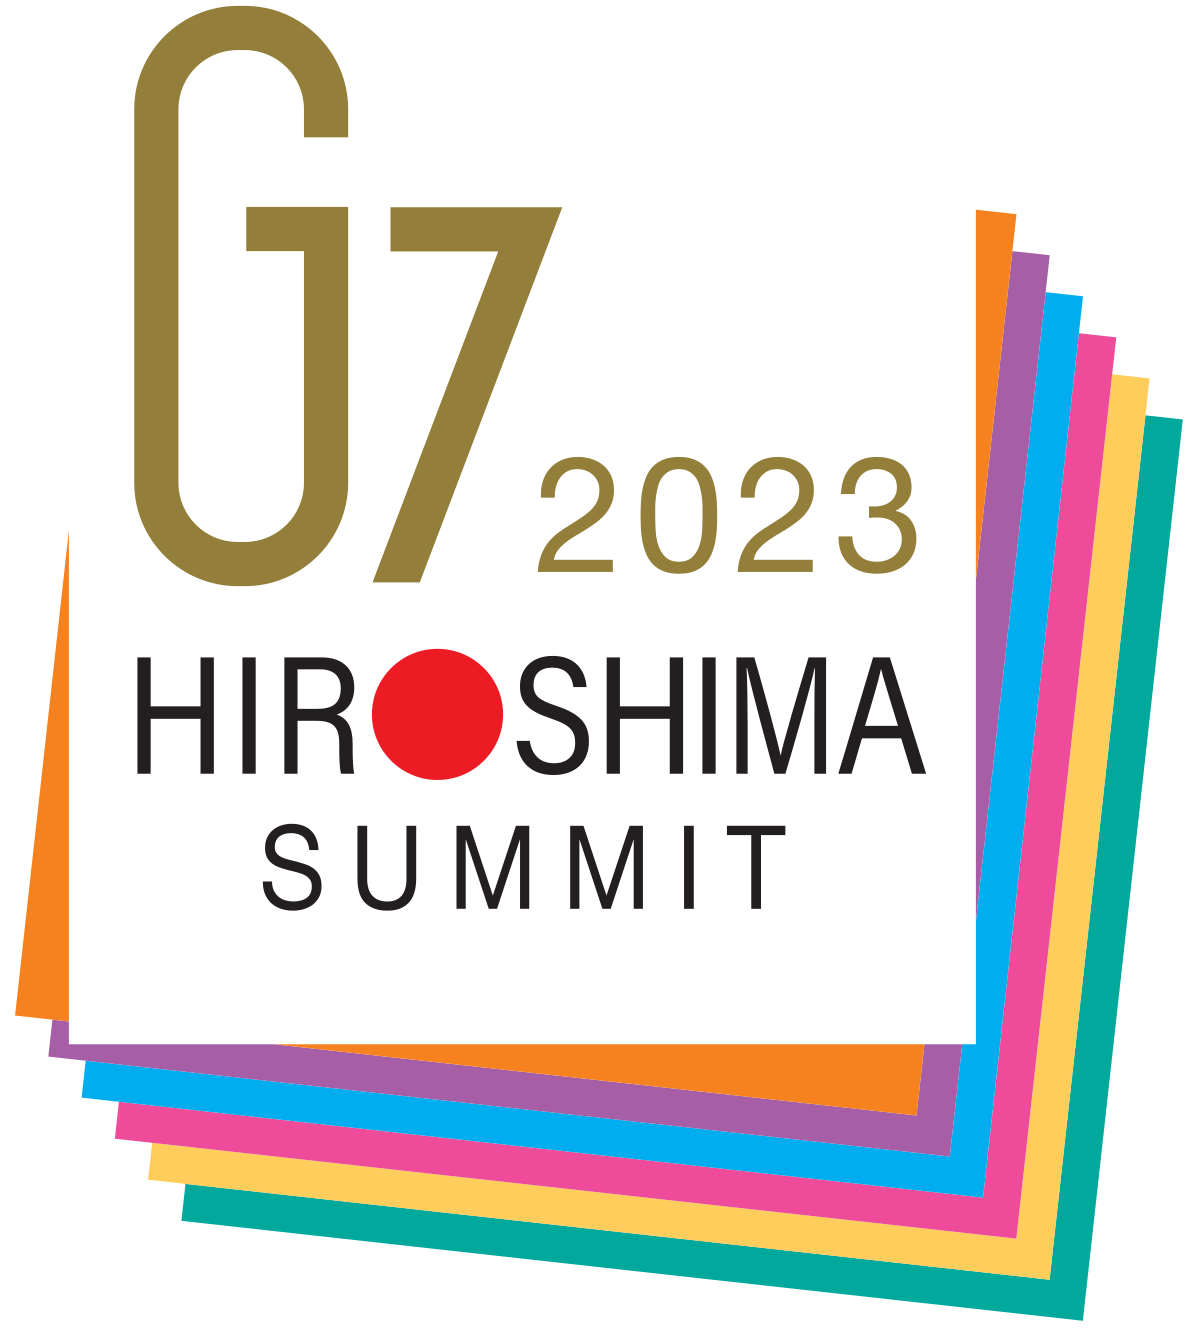 G7 2023 Hiroshima Summit Logo